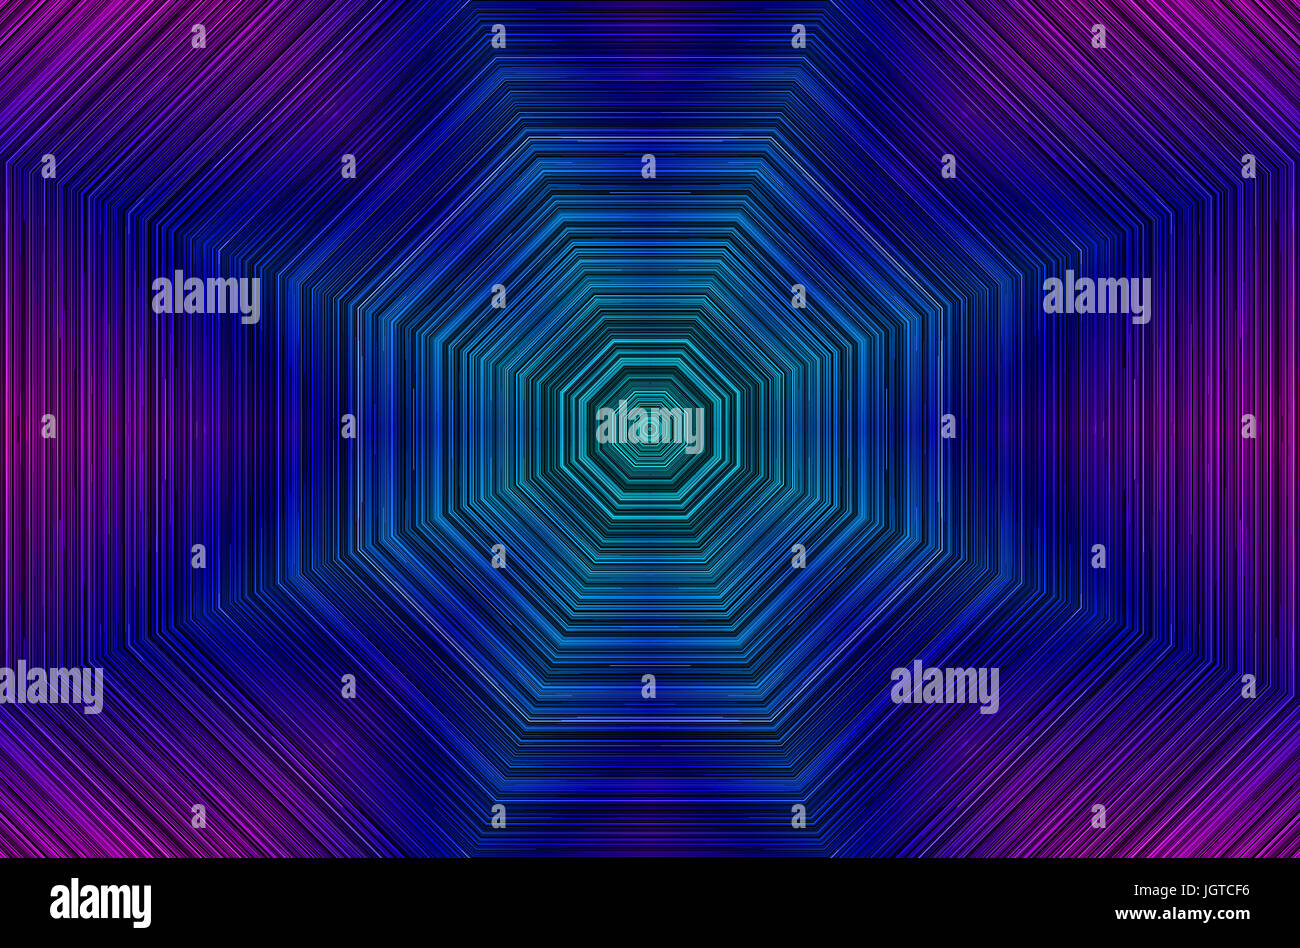 Violett Farbskalen Form, konzentrische Geometrie, 5000x3300 Auflösung. Stockfoto